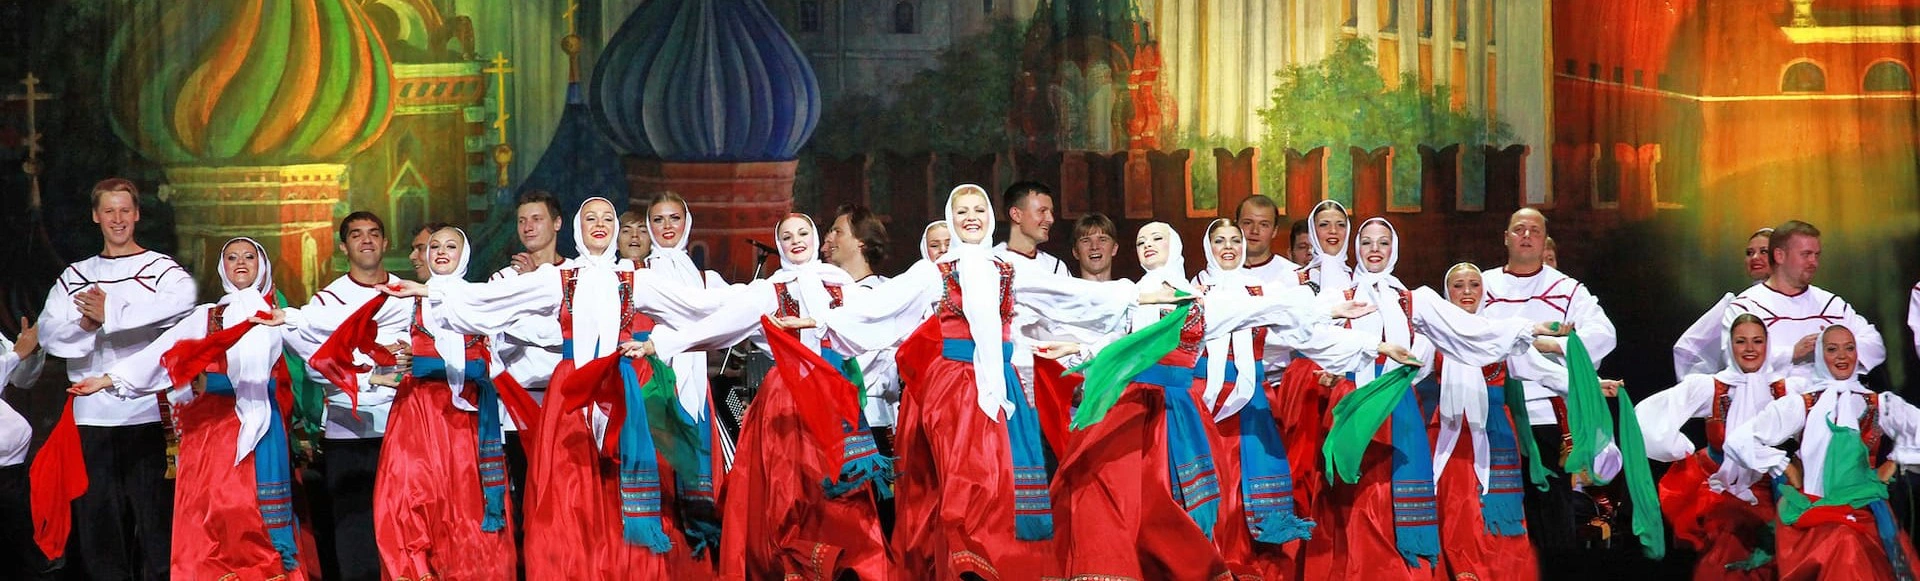 Государственный народный хор имени М. Е. Пятницкого